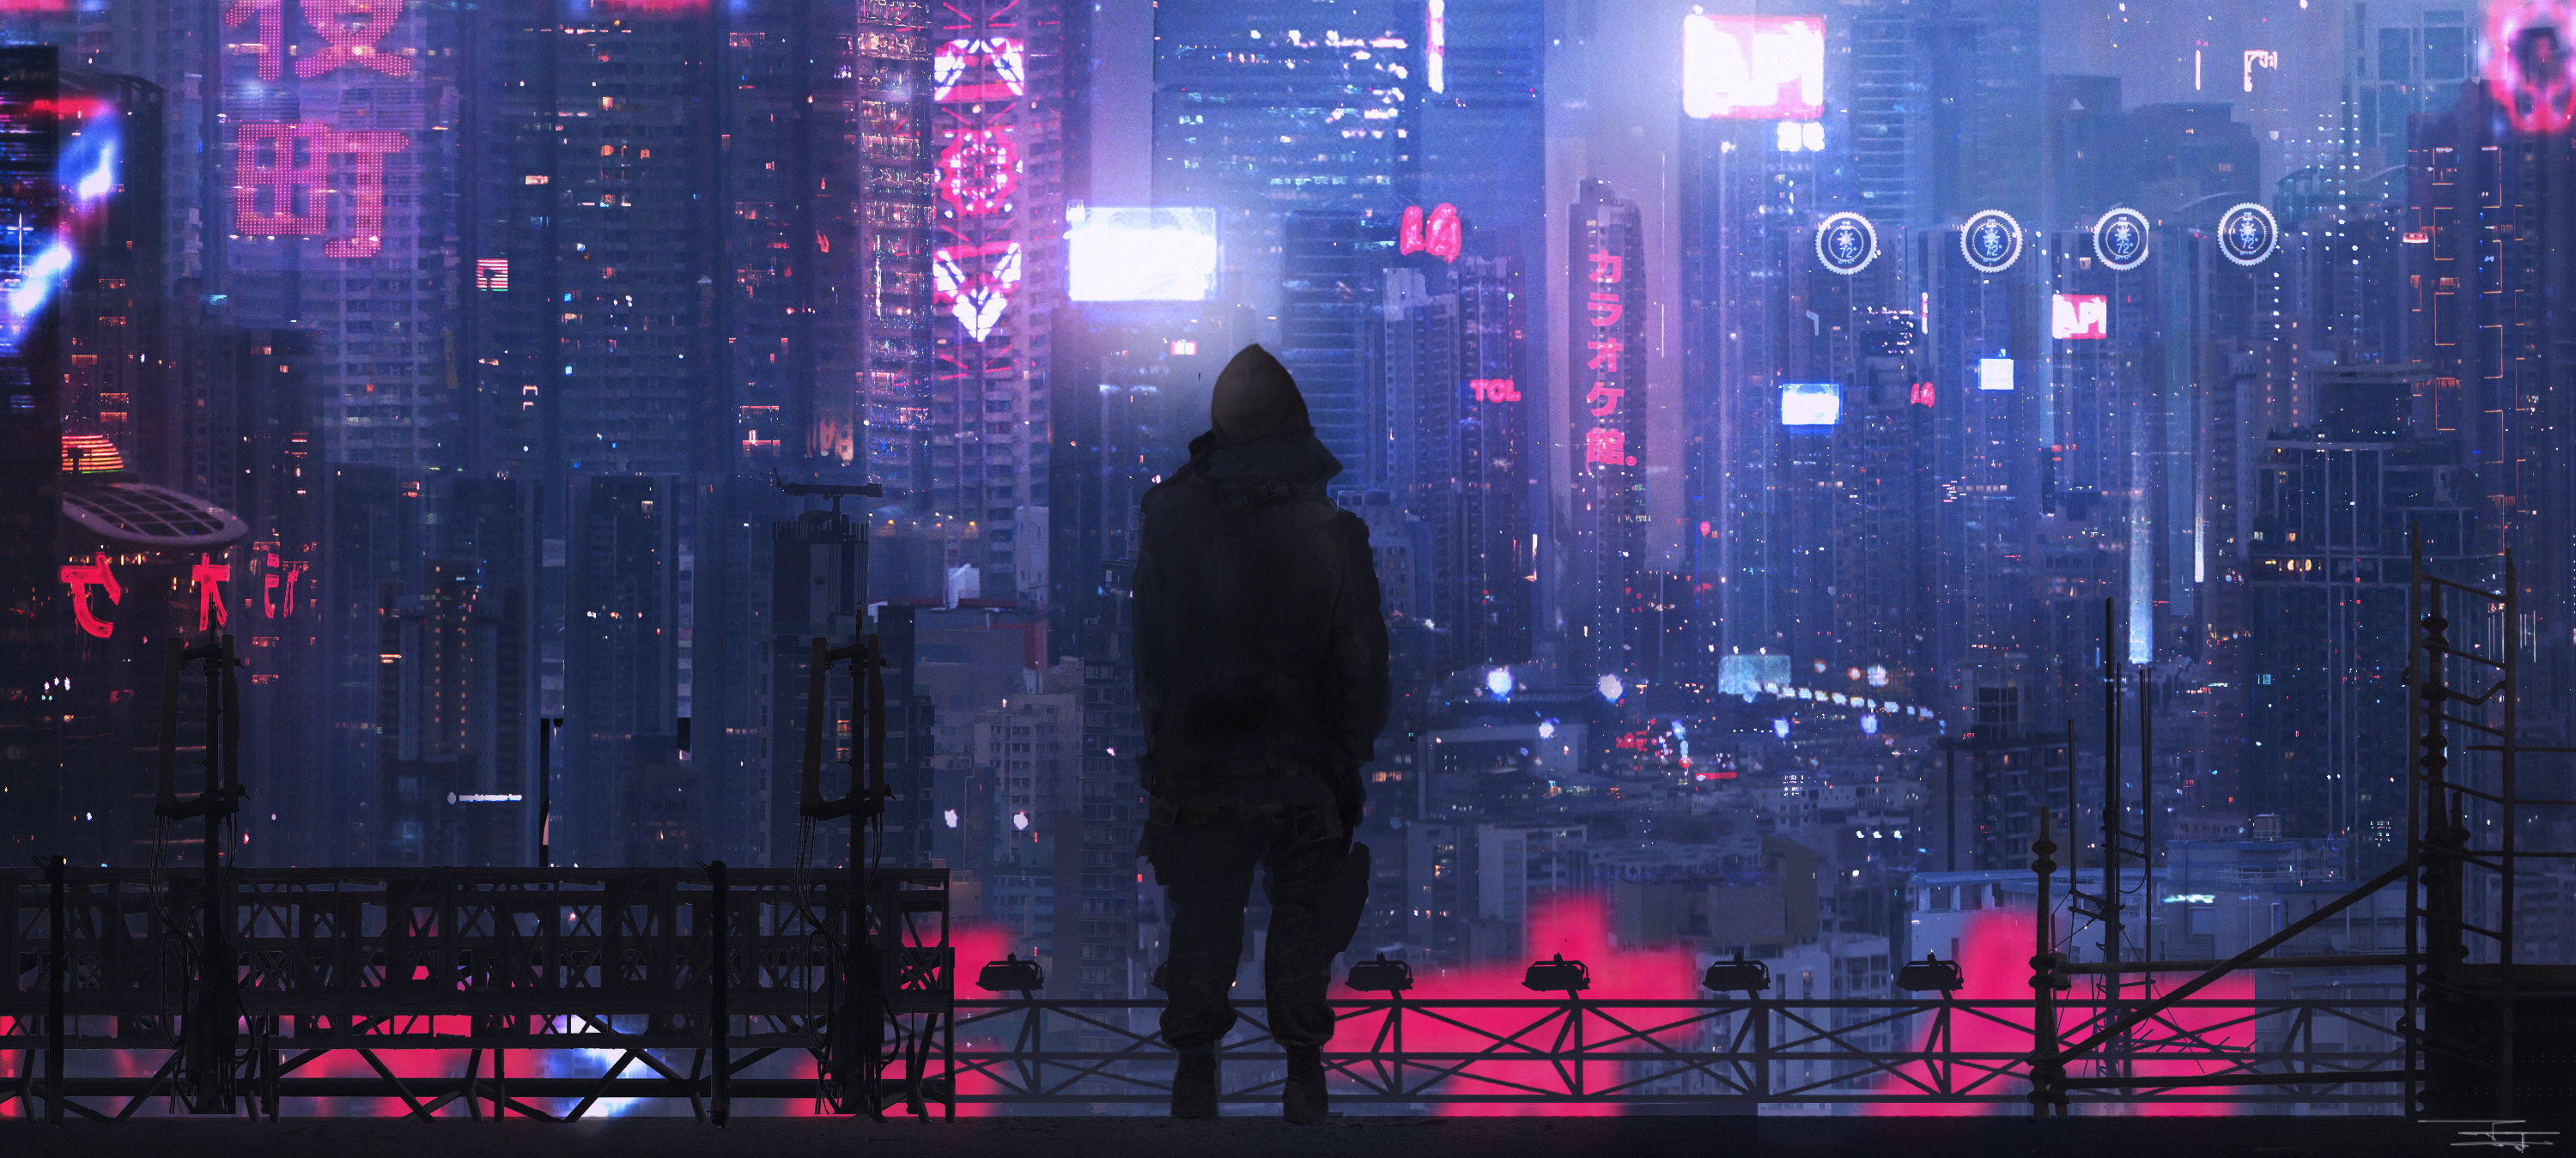 Building City Cyberpunk Cityscape Futuristic Man Night Skyscraper 3000x1349